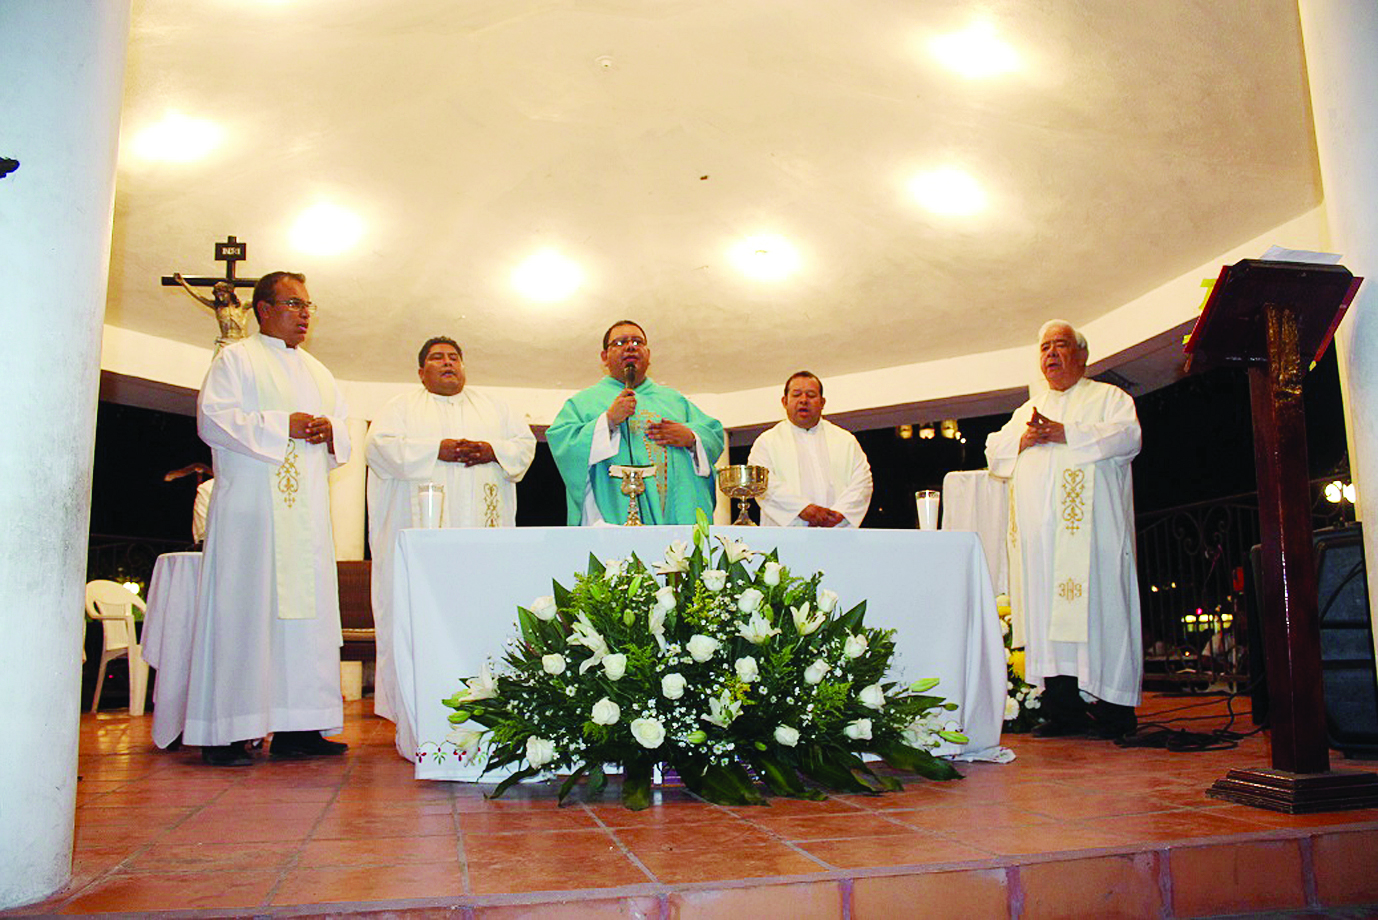 Festejan centenario de la Virgen de Fátima